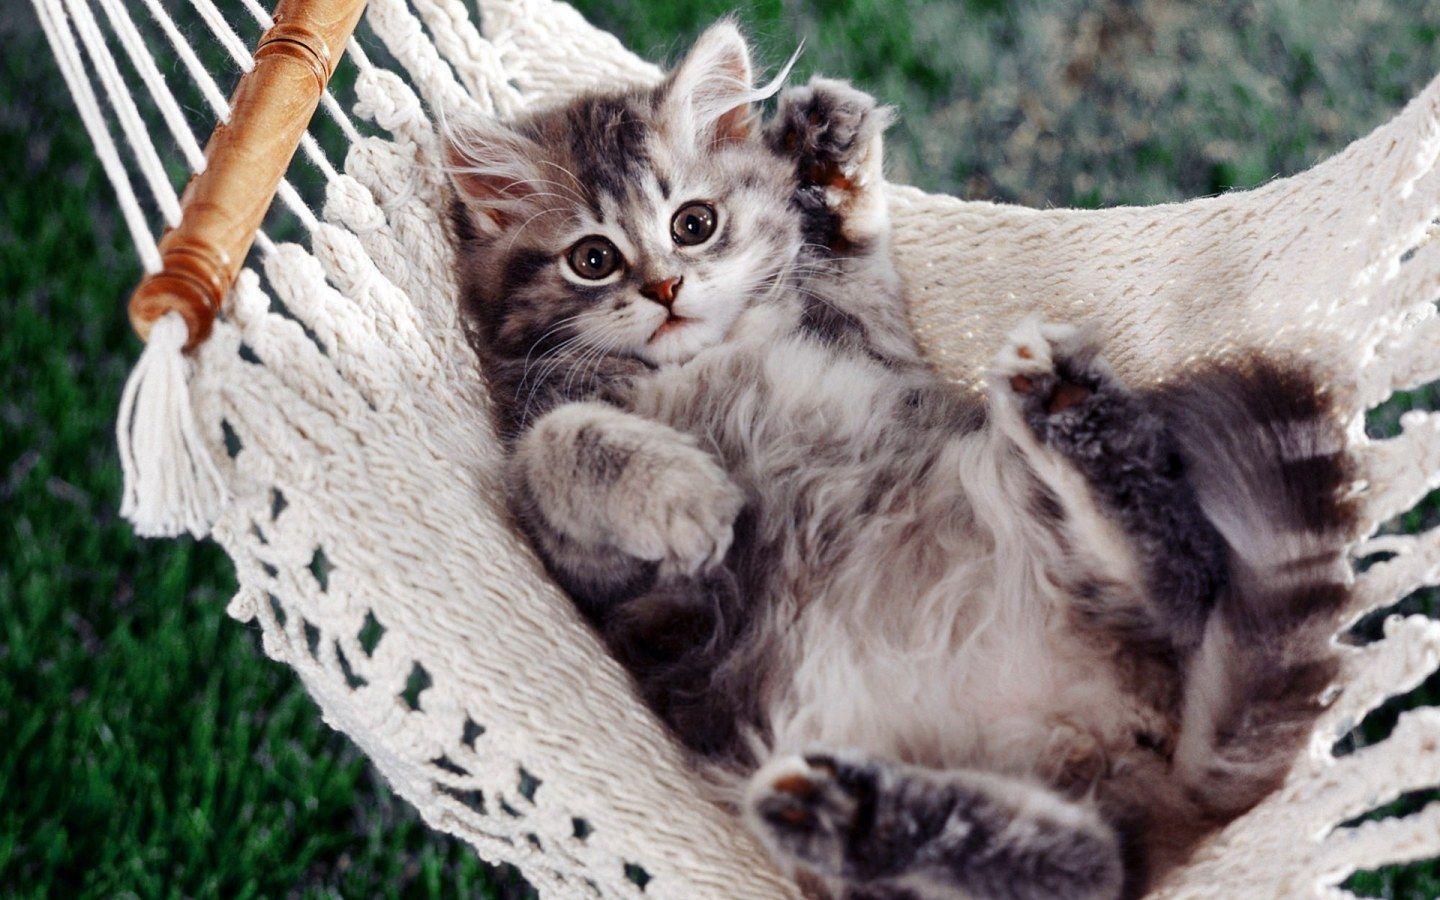 Kitten relaxing in the Swing widescreen wallpaper. Wide